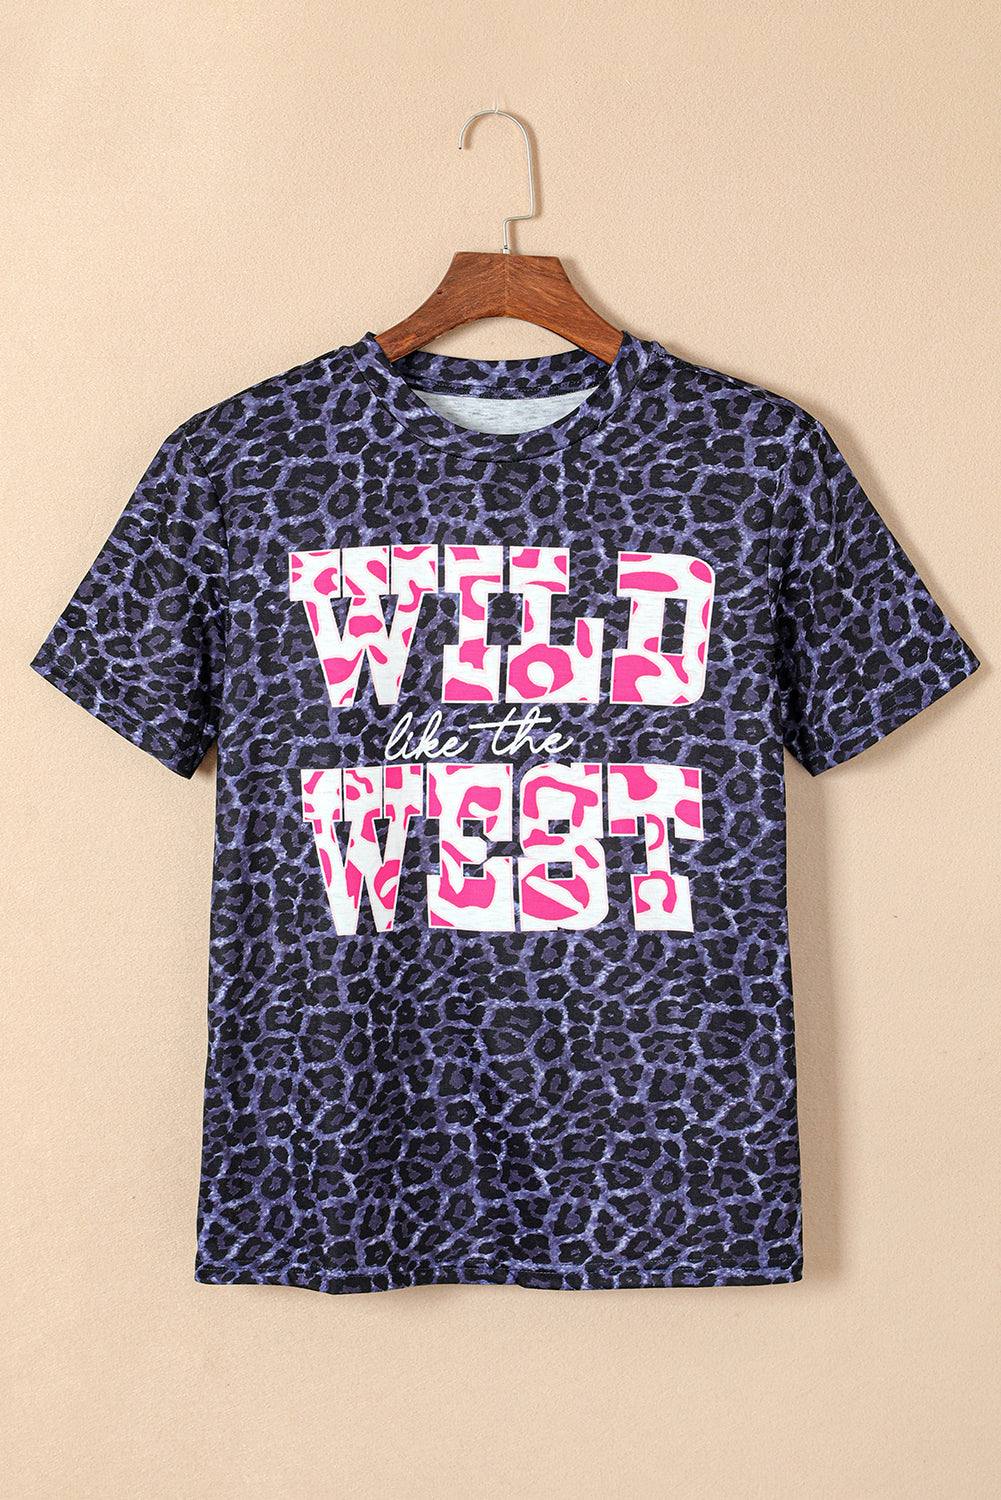 Črna WILD kot WEST leopard majica